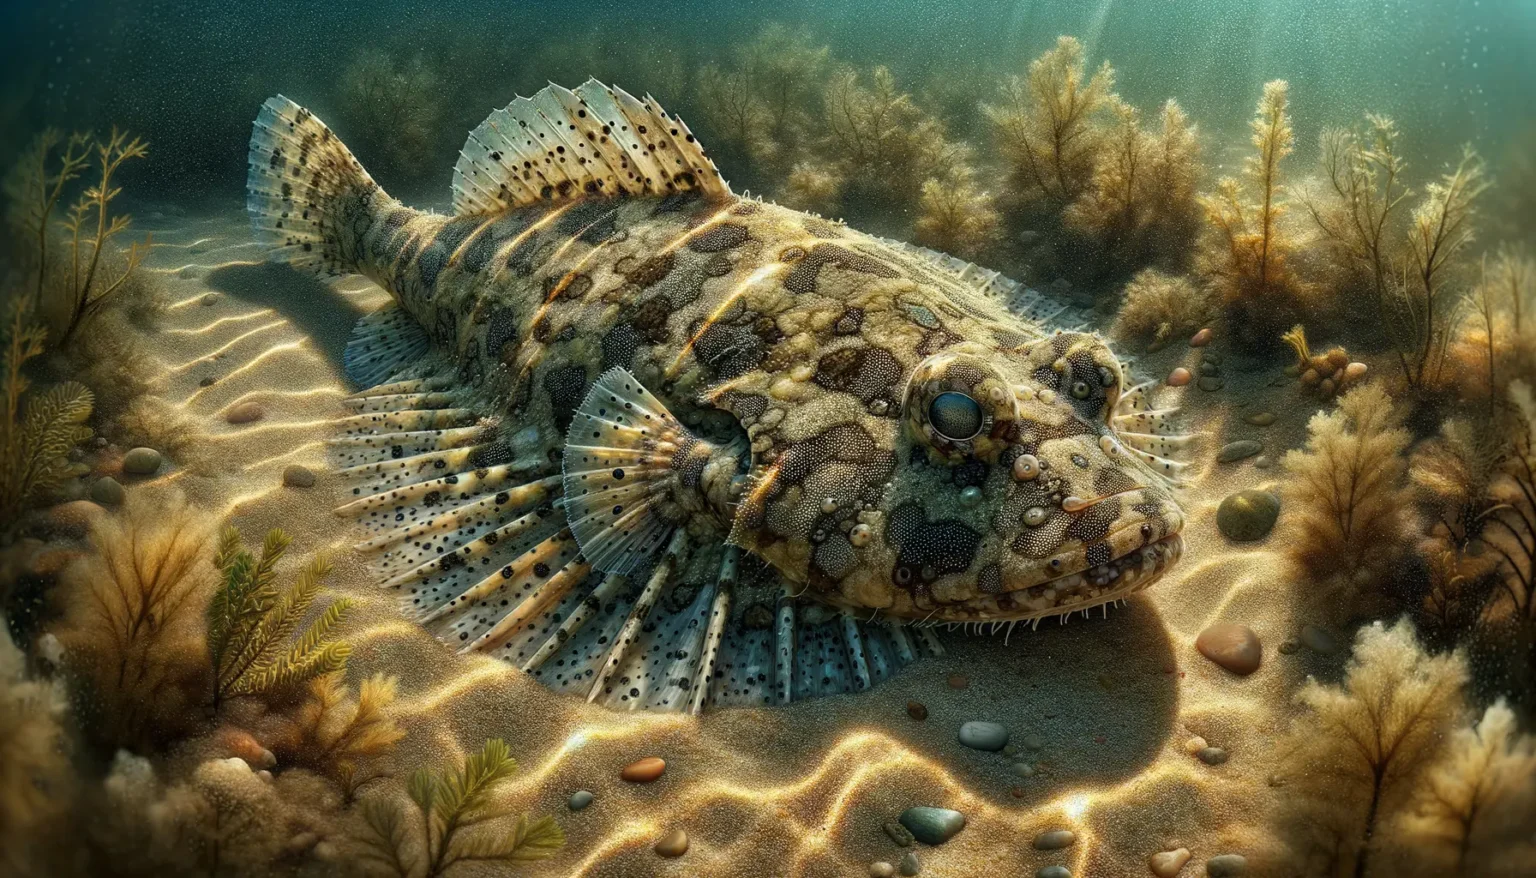 Ein flacher Fisch mit einer Musterung, die an einen Kiesboden erinnert, ruht auf dem sandigen Meeresboden, umgeben von Wasserpflanzen und kleinen Steinen, während Lichtstrahlen durch das Wasser dringen und eine friedliche Unterwasserlandschaft bilden.